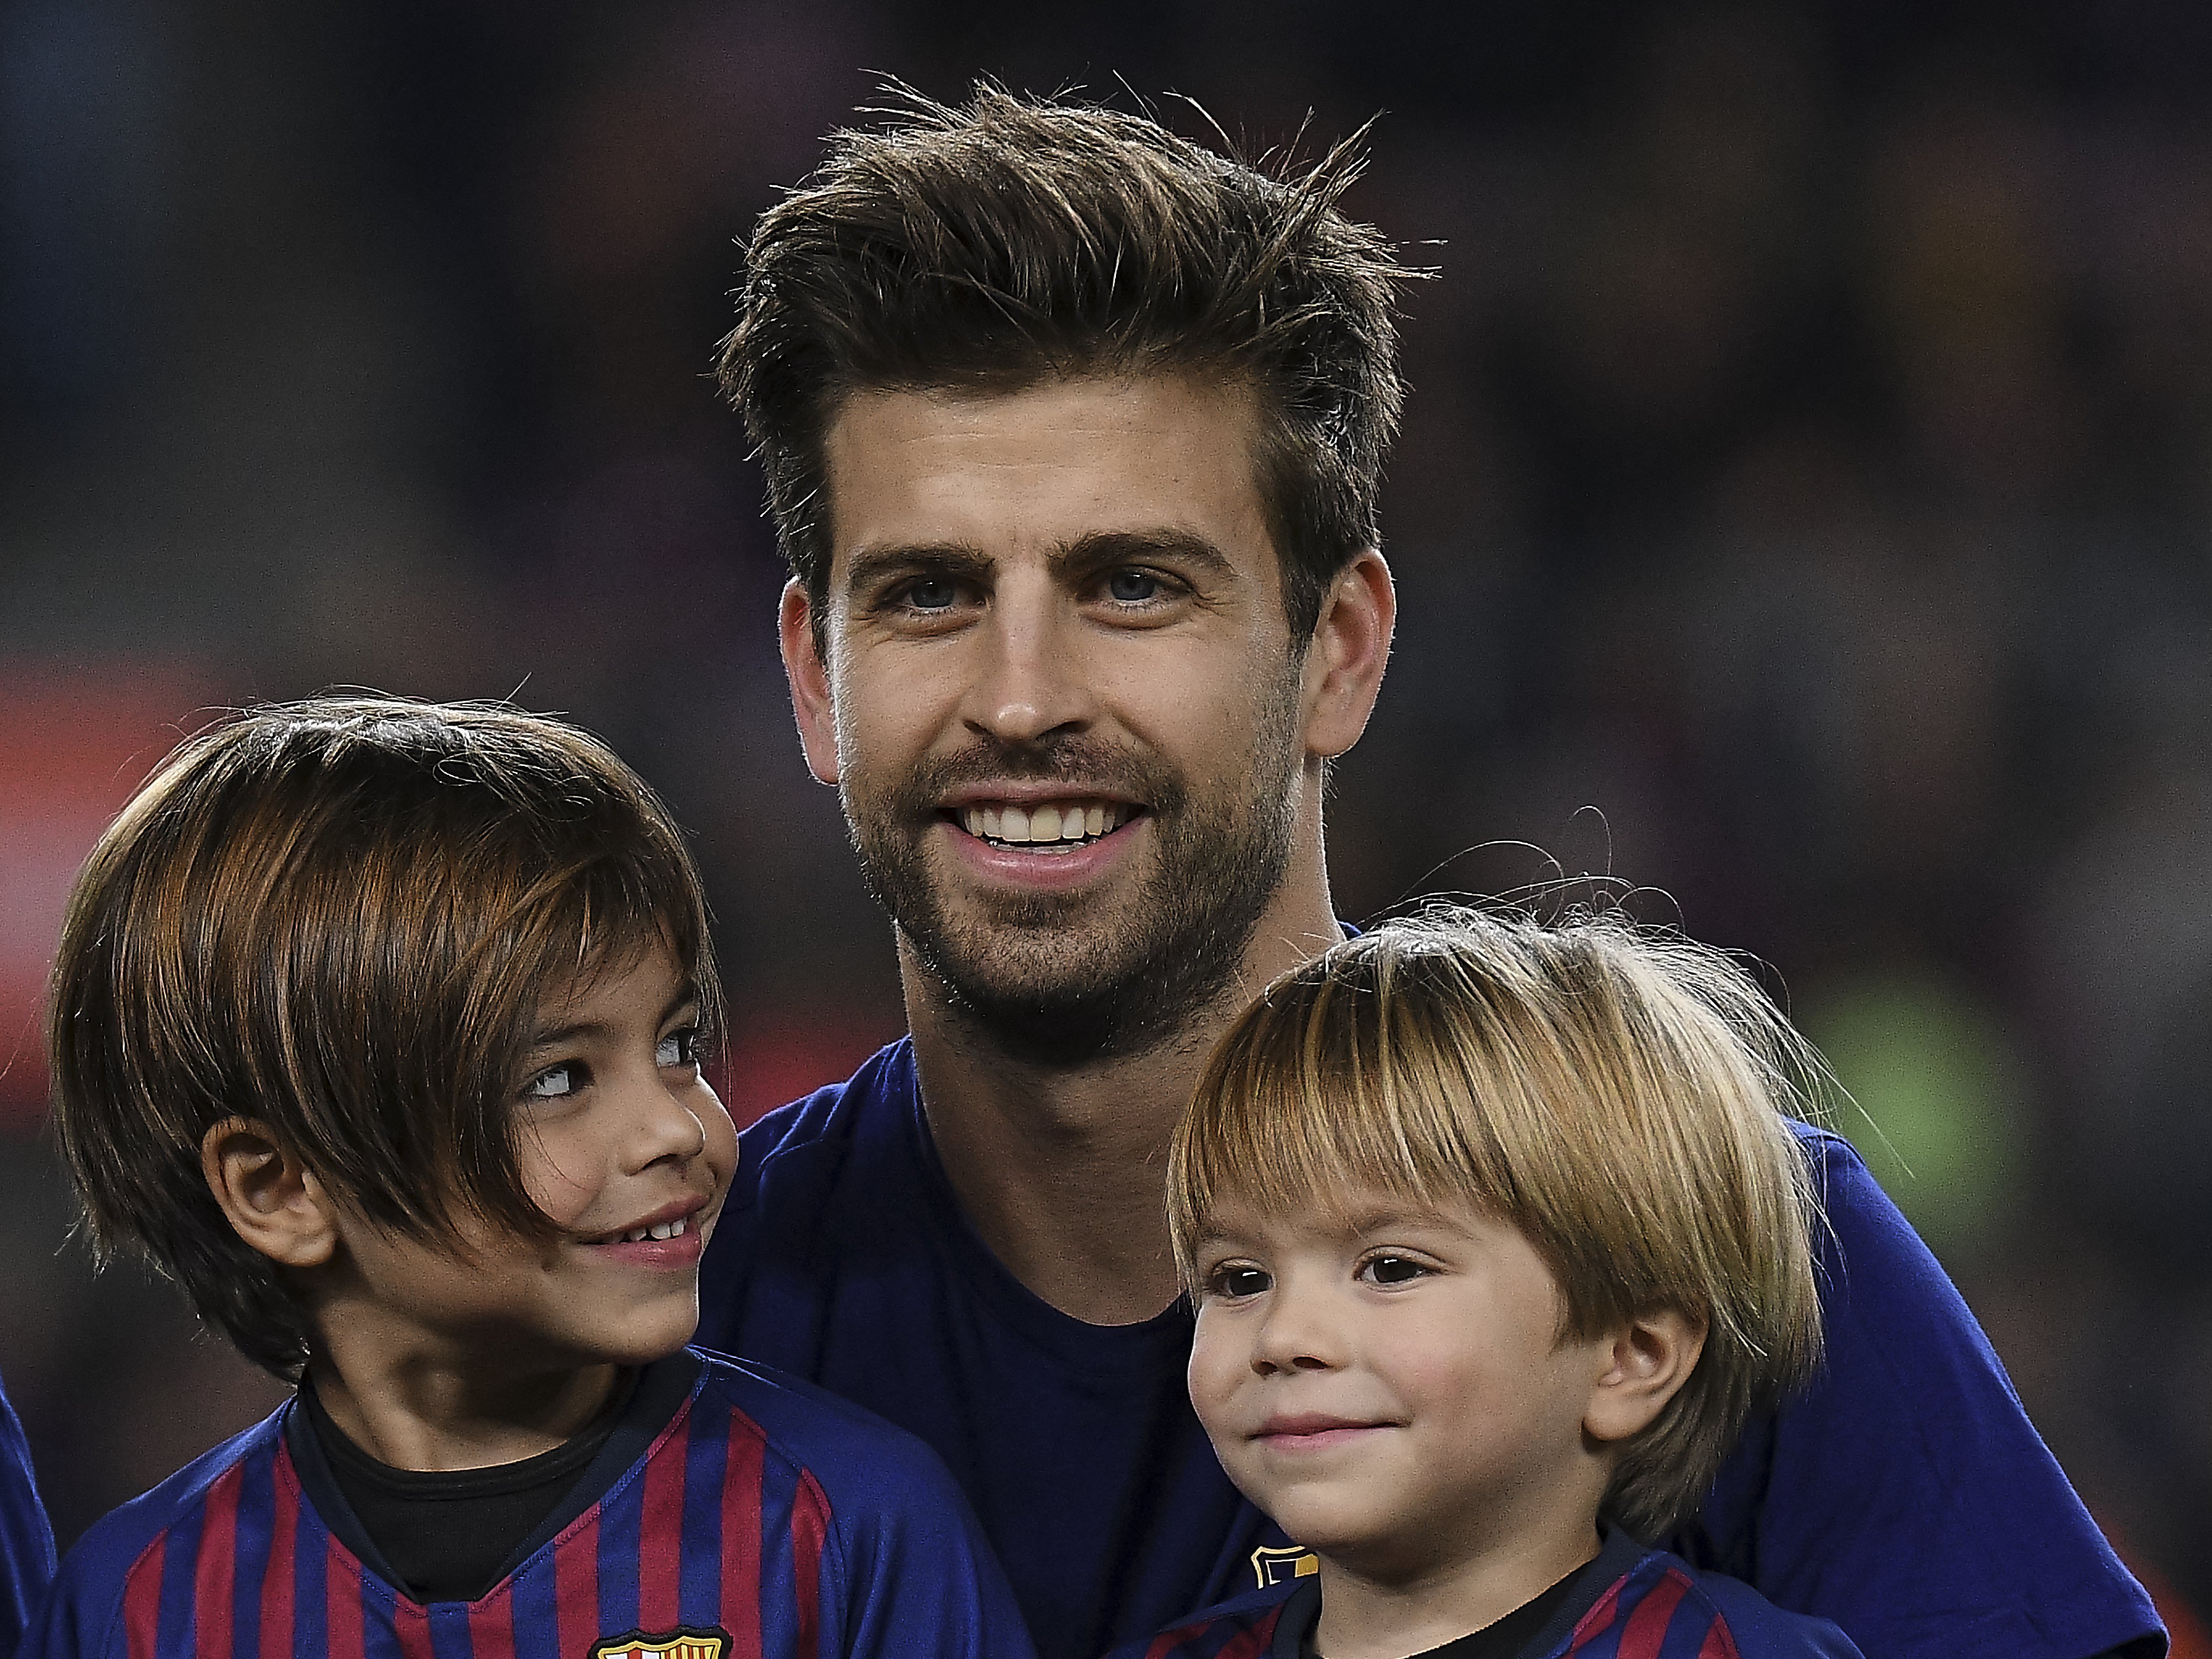 Inédita y tierna imagen de Piqué, Suárez y Messi con sus hijos en la grada